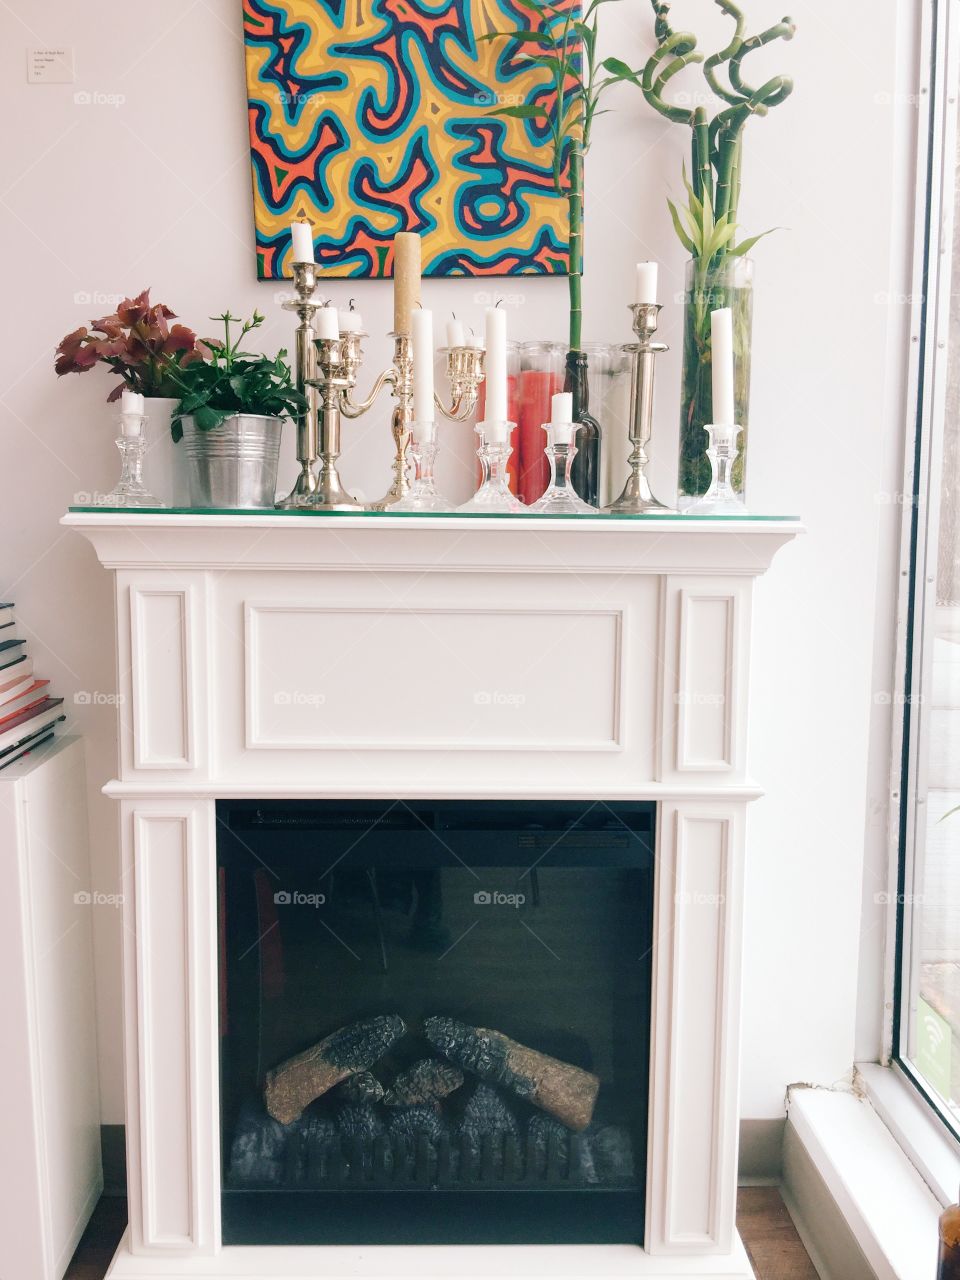 Classy vintage fireplace